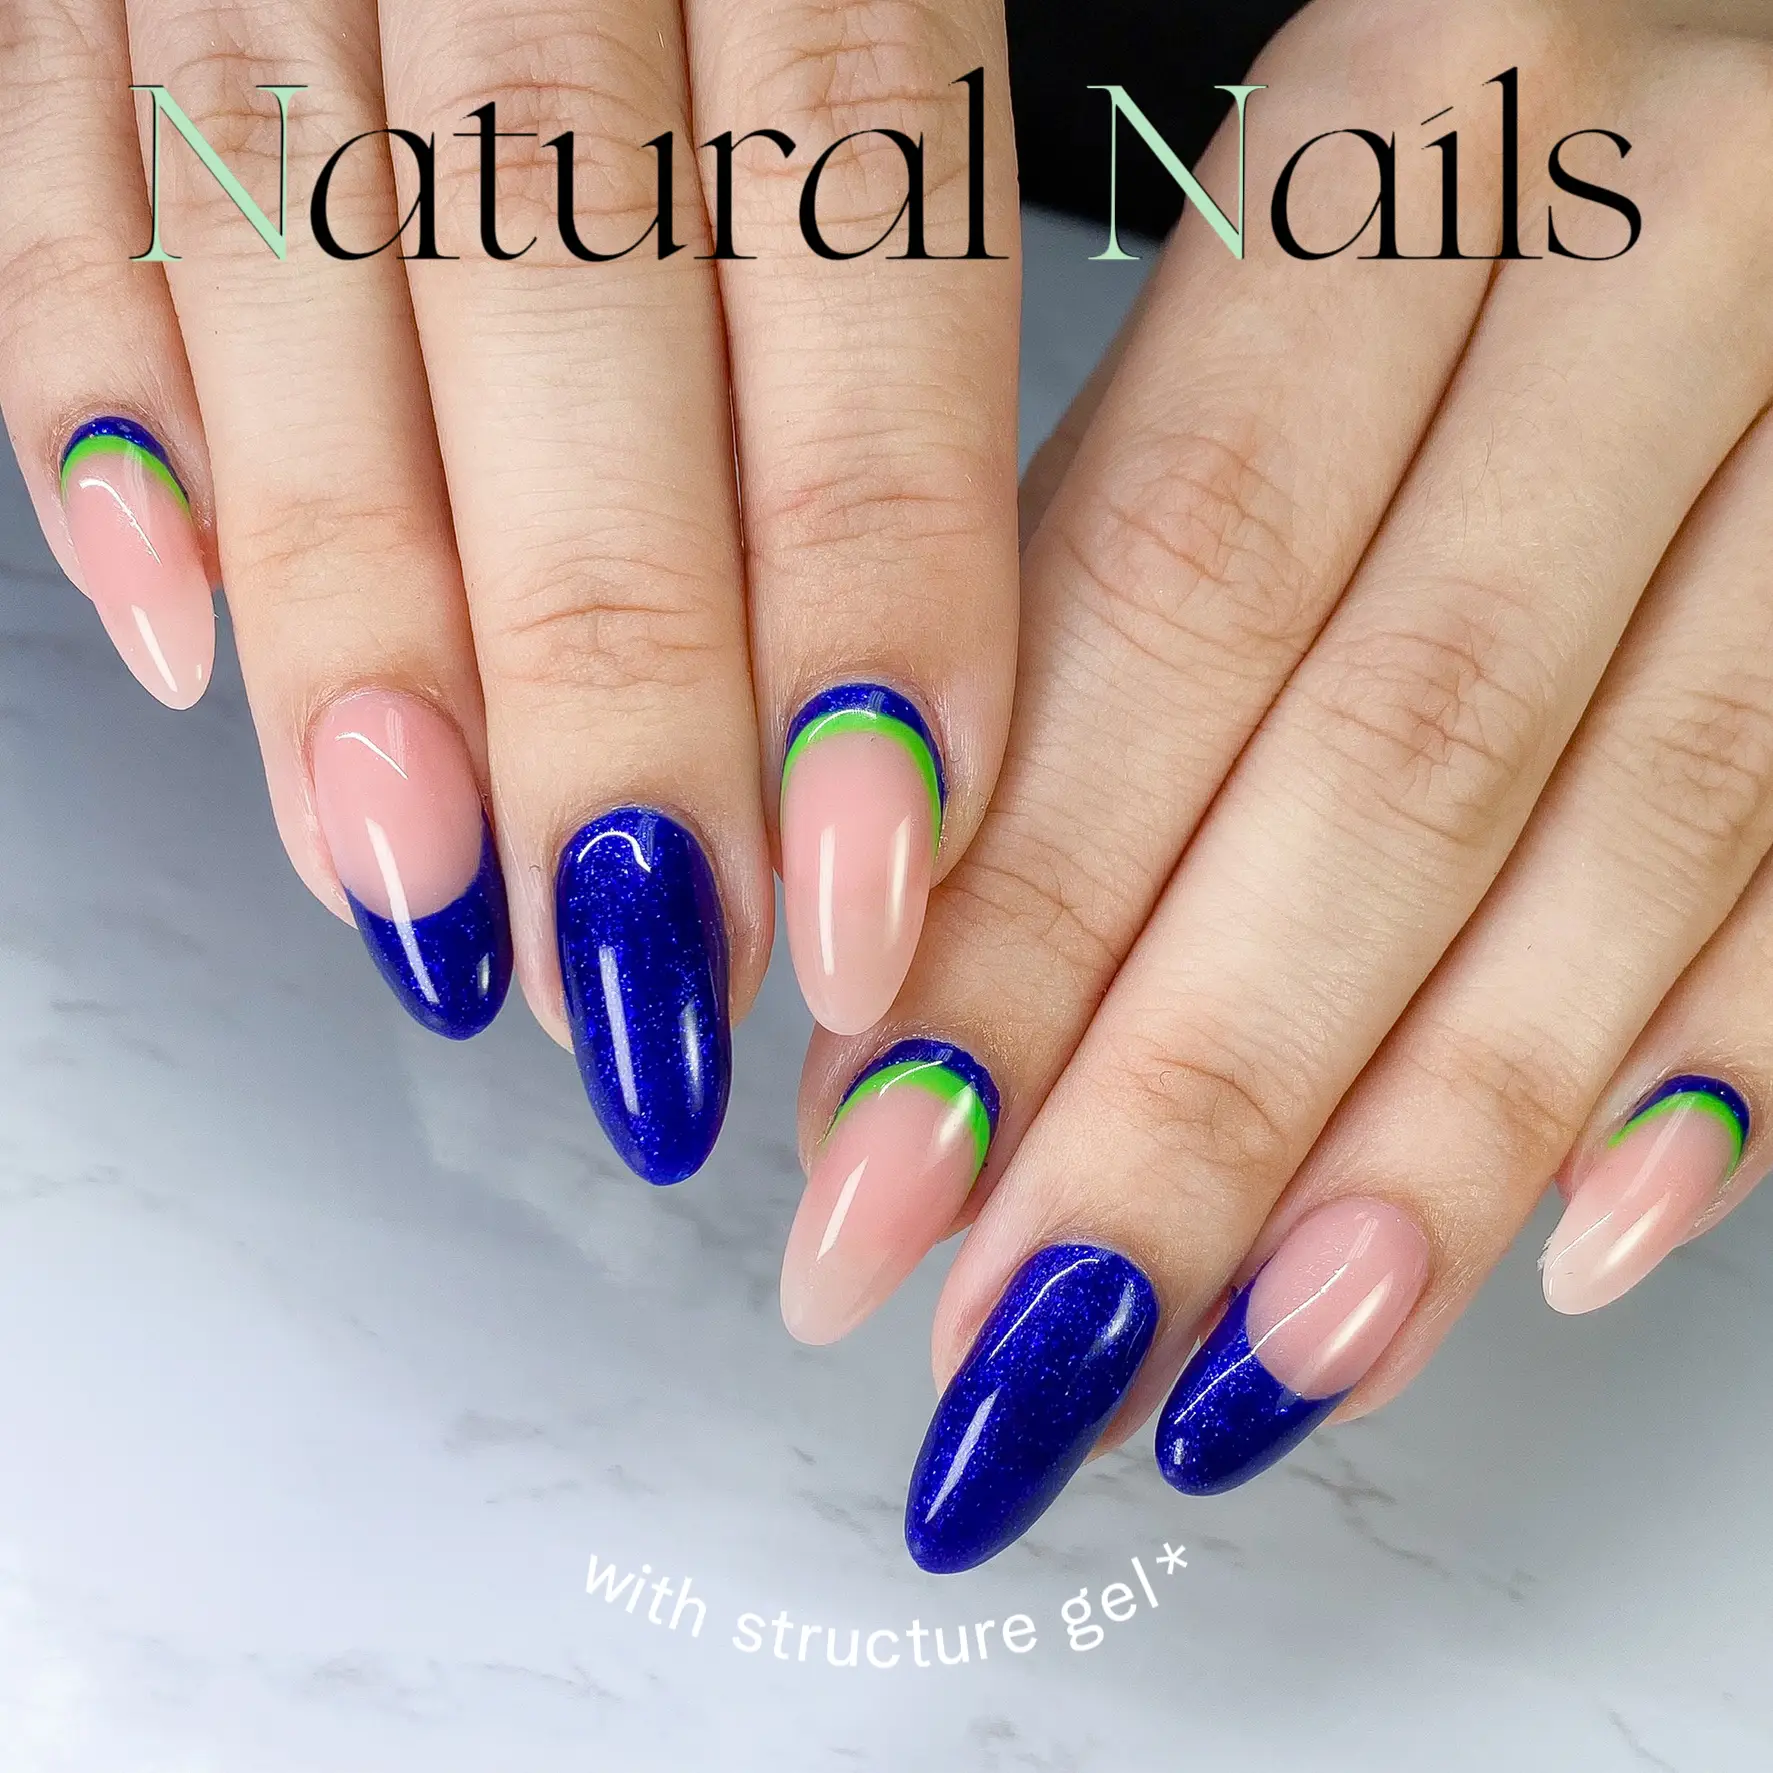 Natural nails! 𝒔𝒕𝒓𝒖𝒄𝒕𝒖𝒓𝒆𝒅 𝒈𝒆𝒍 𝒎𝒂𝒏𝒊𝒄𝒖𝒓𝒆